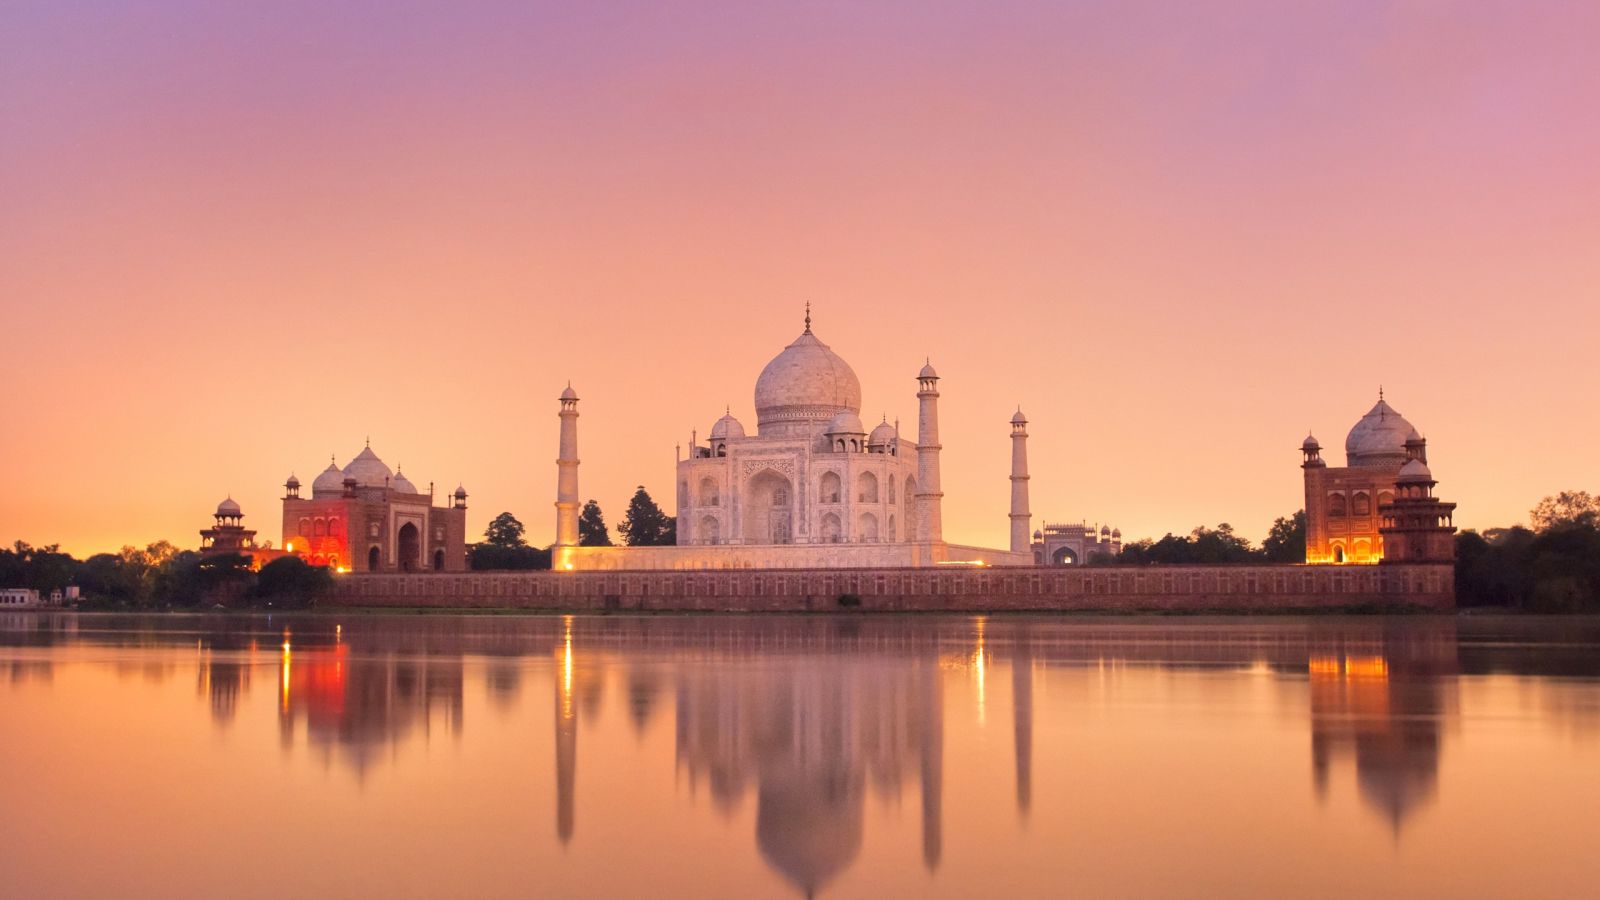 Incredible India - Taj Mahal , HD Wallpaper & Backgrounds